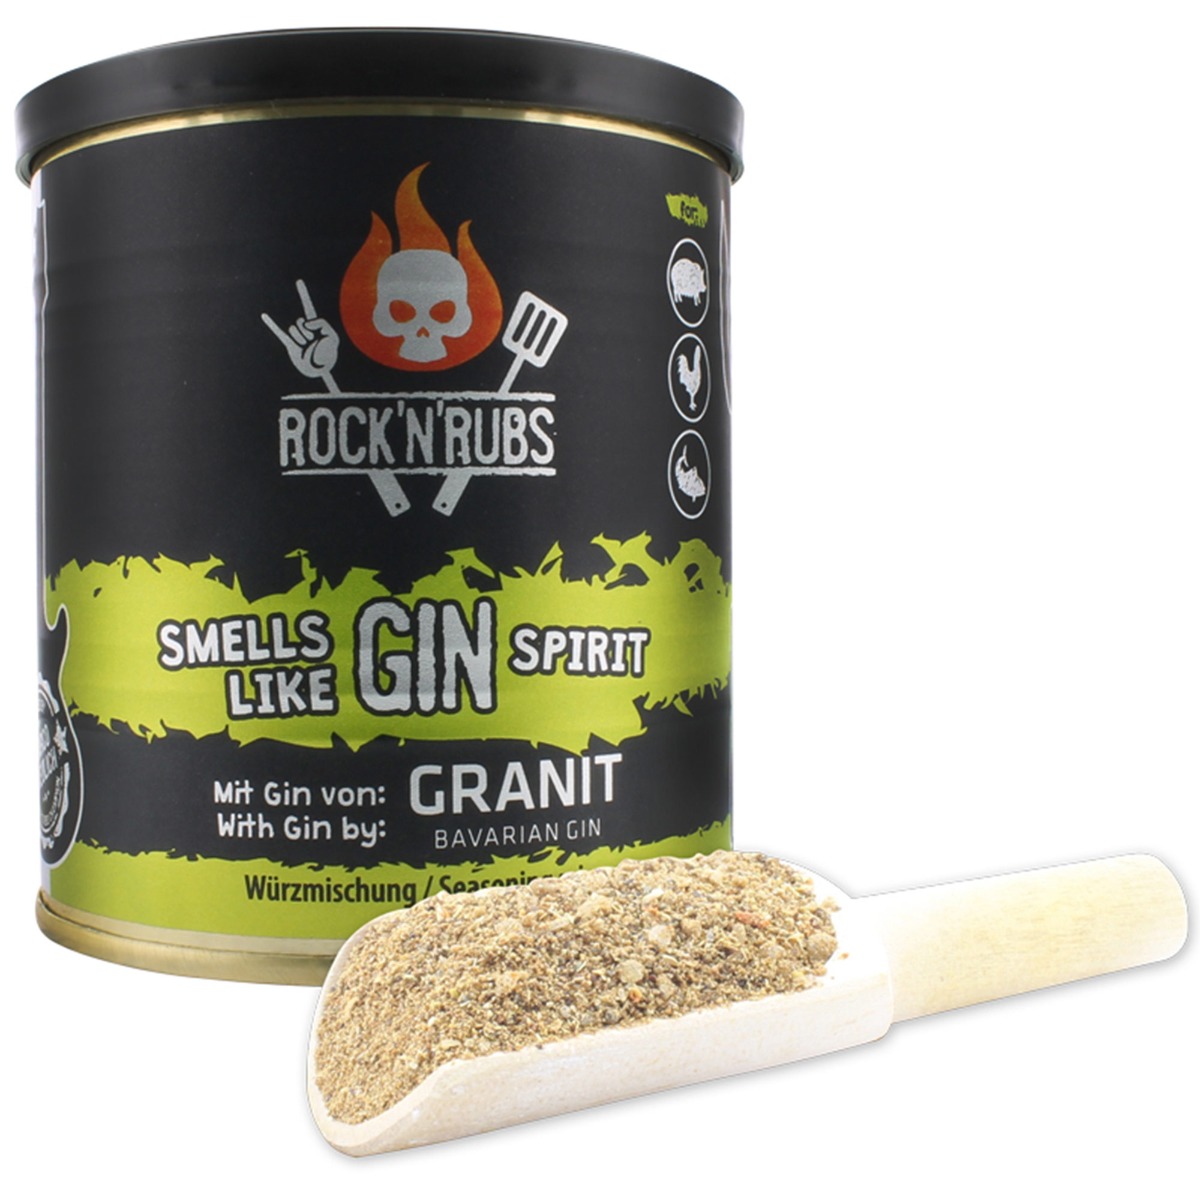 Μπαχαρικά Smells like Gin Spirit, 130g – Rock n’ Rubs®